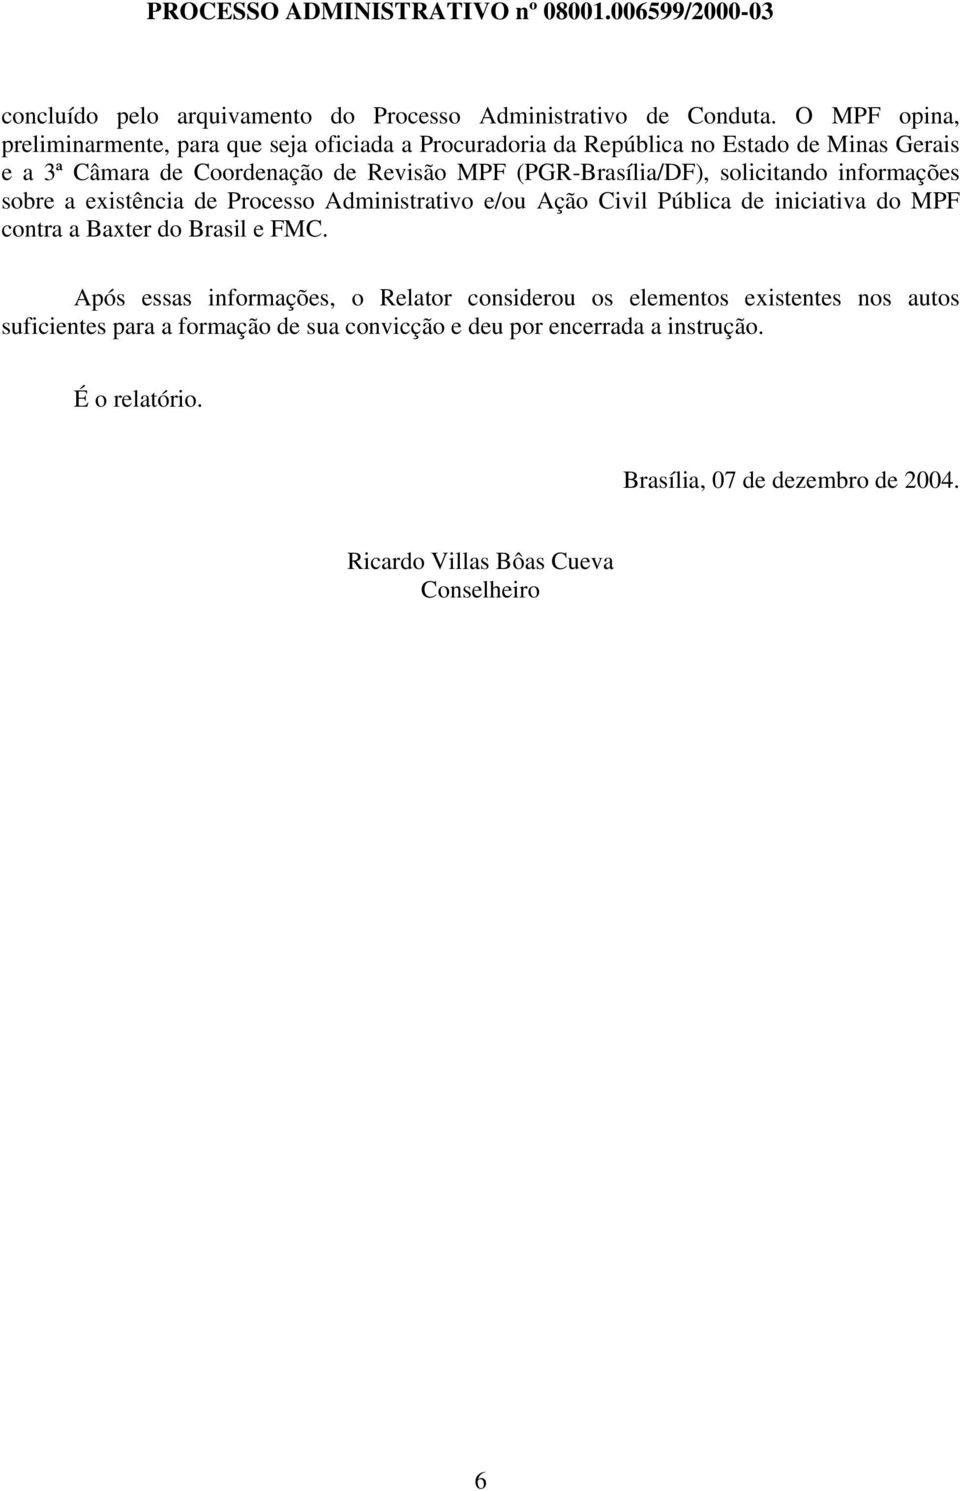 (PGR-Brasília/DF), solicitando informações sobre a existência de Processo Administrativo e/ou Ação Civil Pública de iniciativa do MPF contra a Baxter do